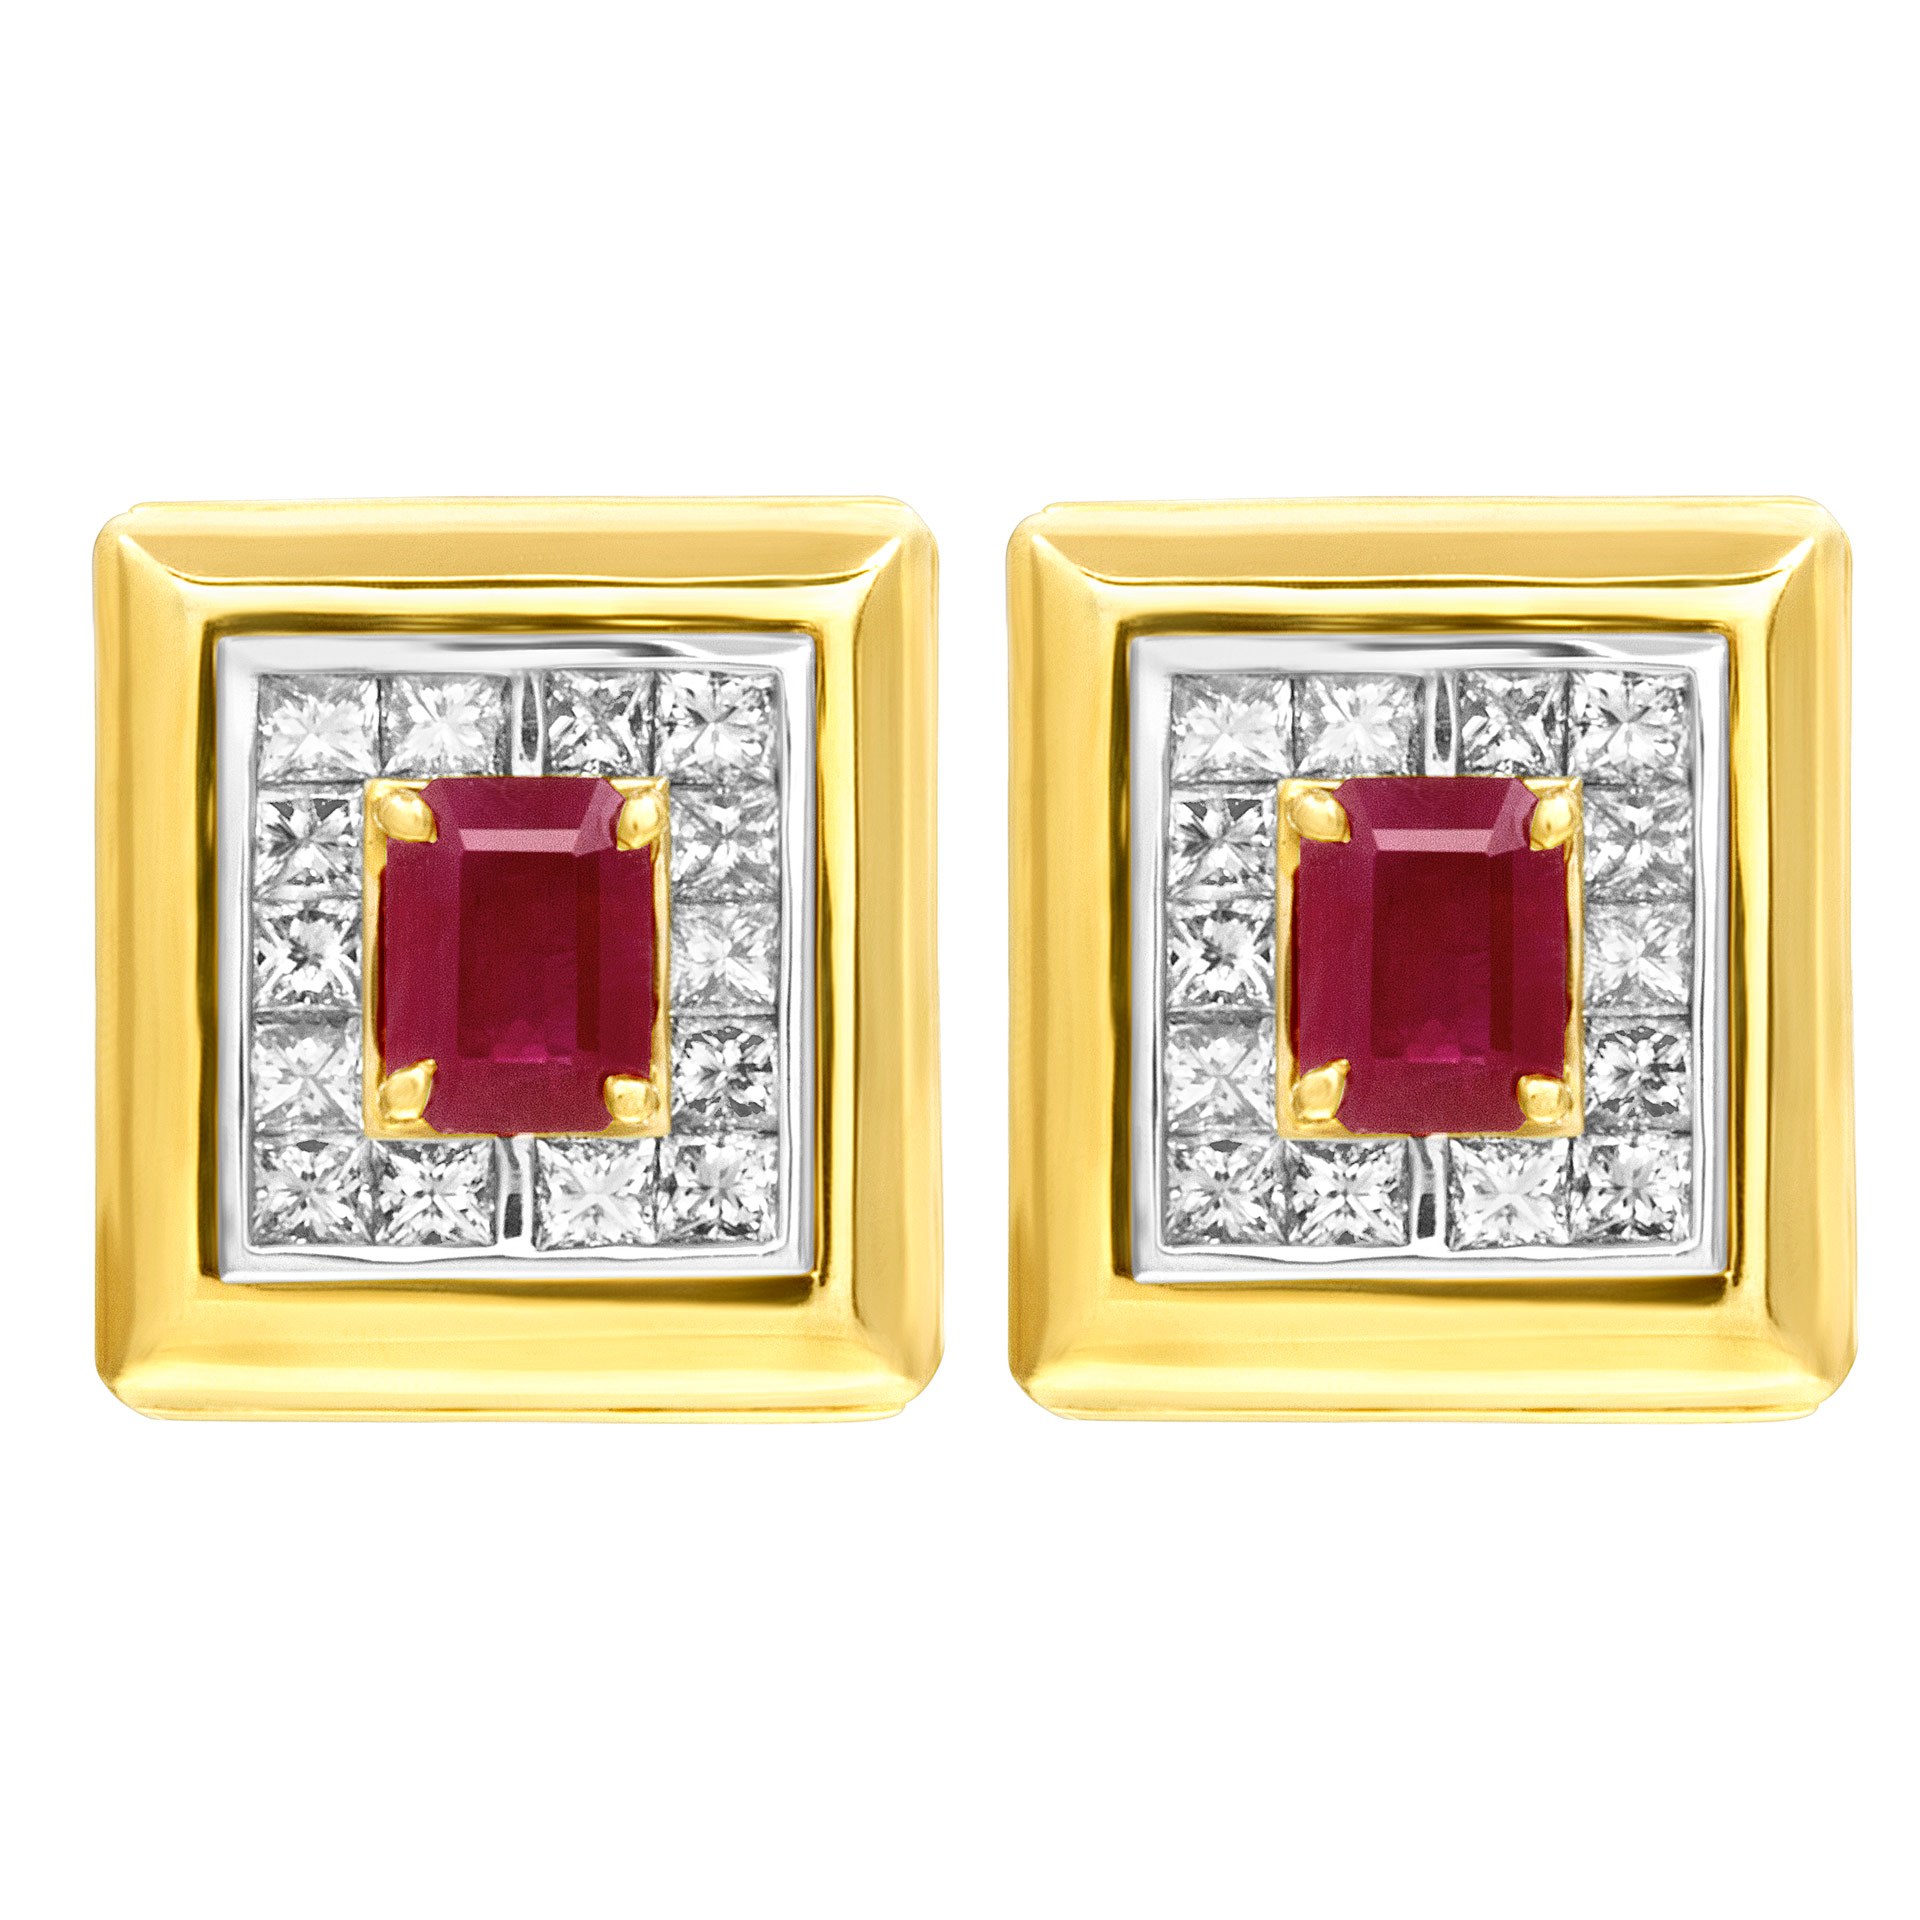 Ruby & diamond earrings in 14k 1.40 cts in princess cut diamonds